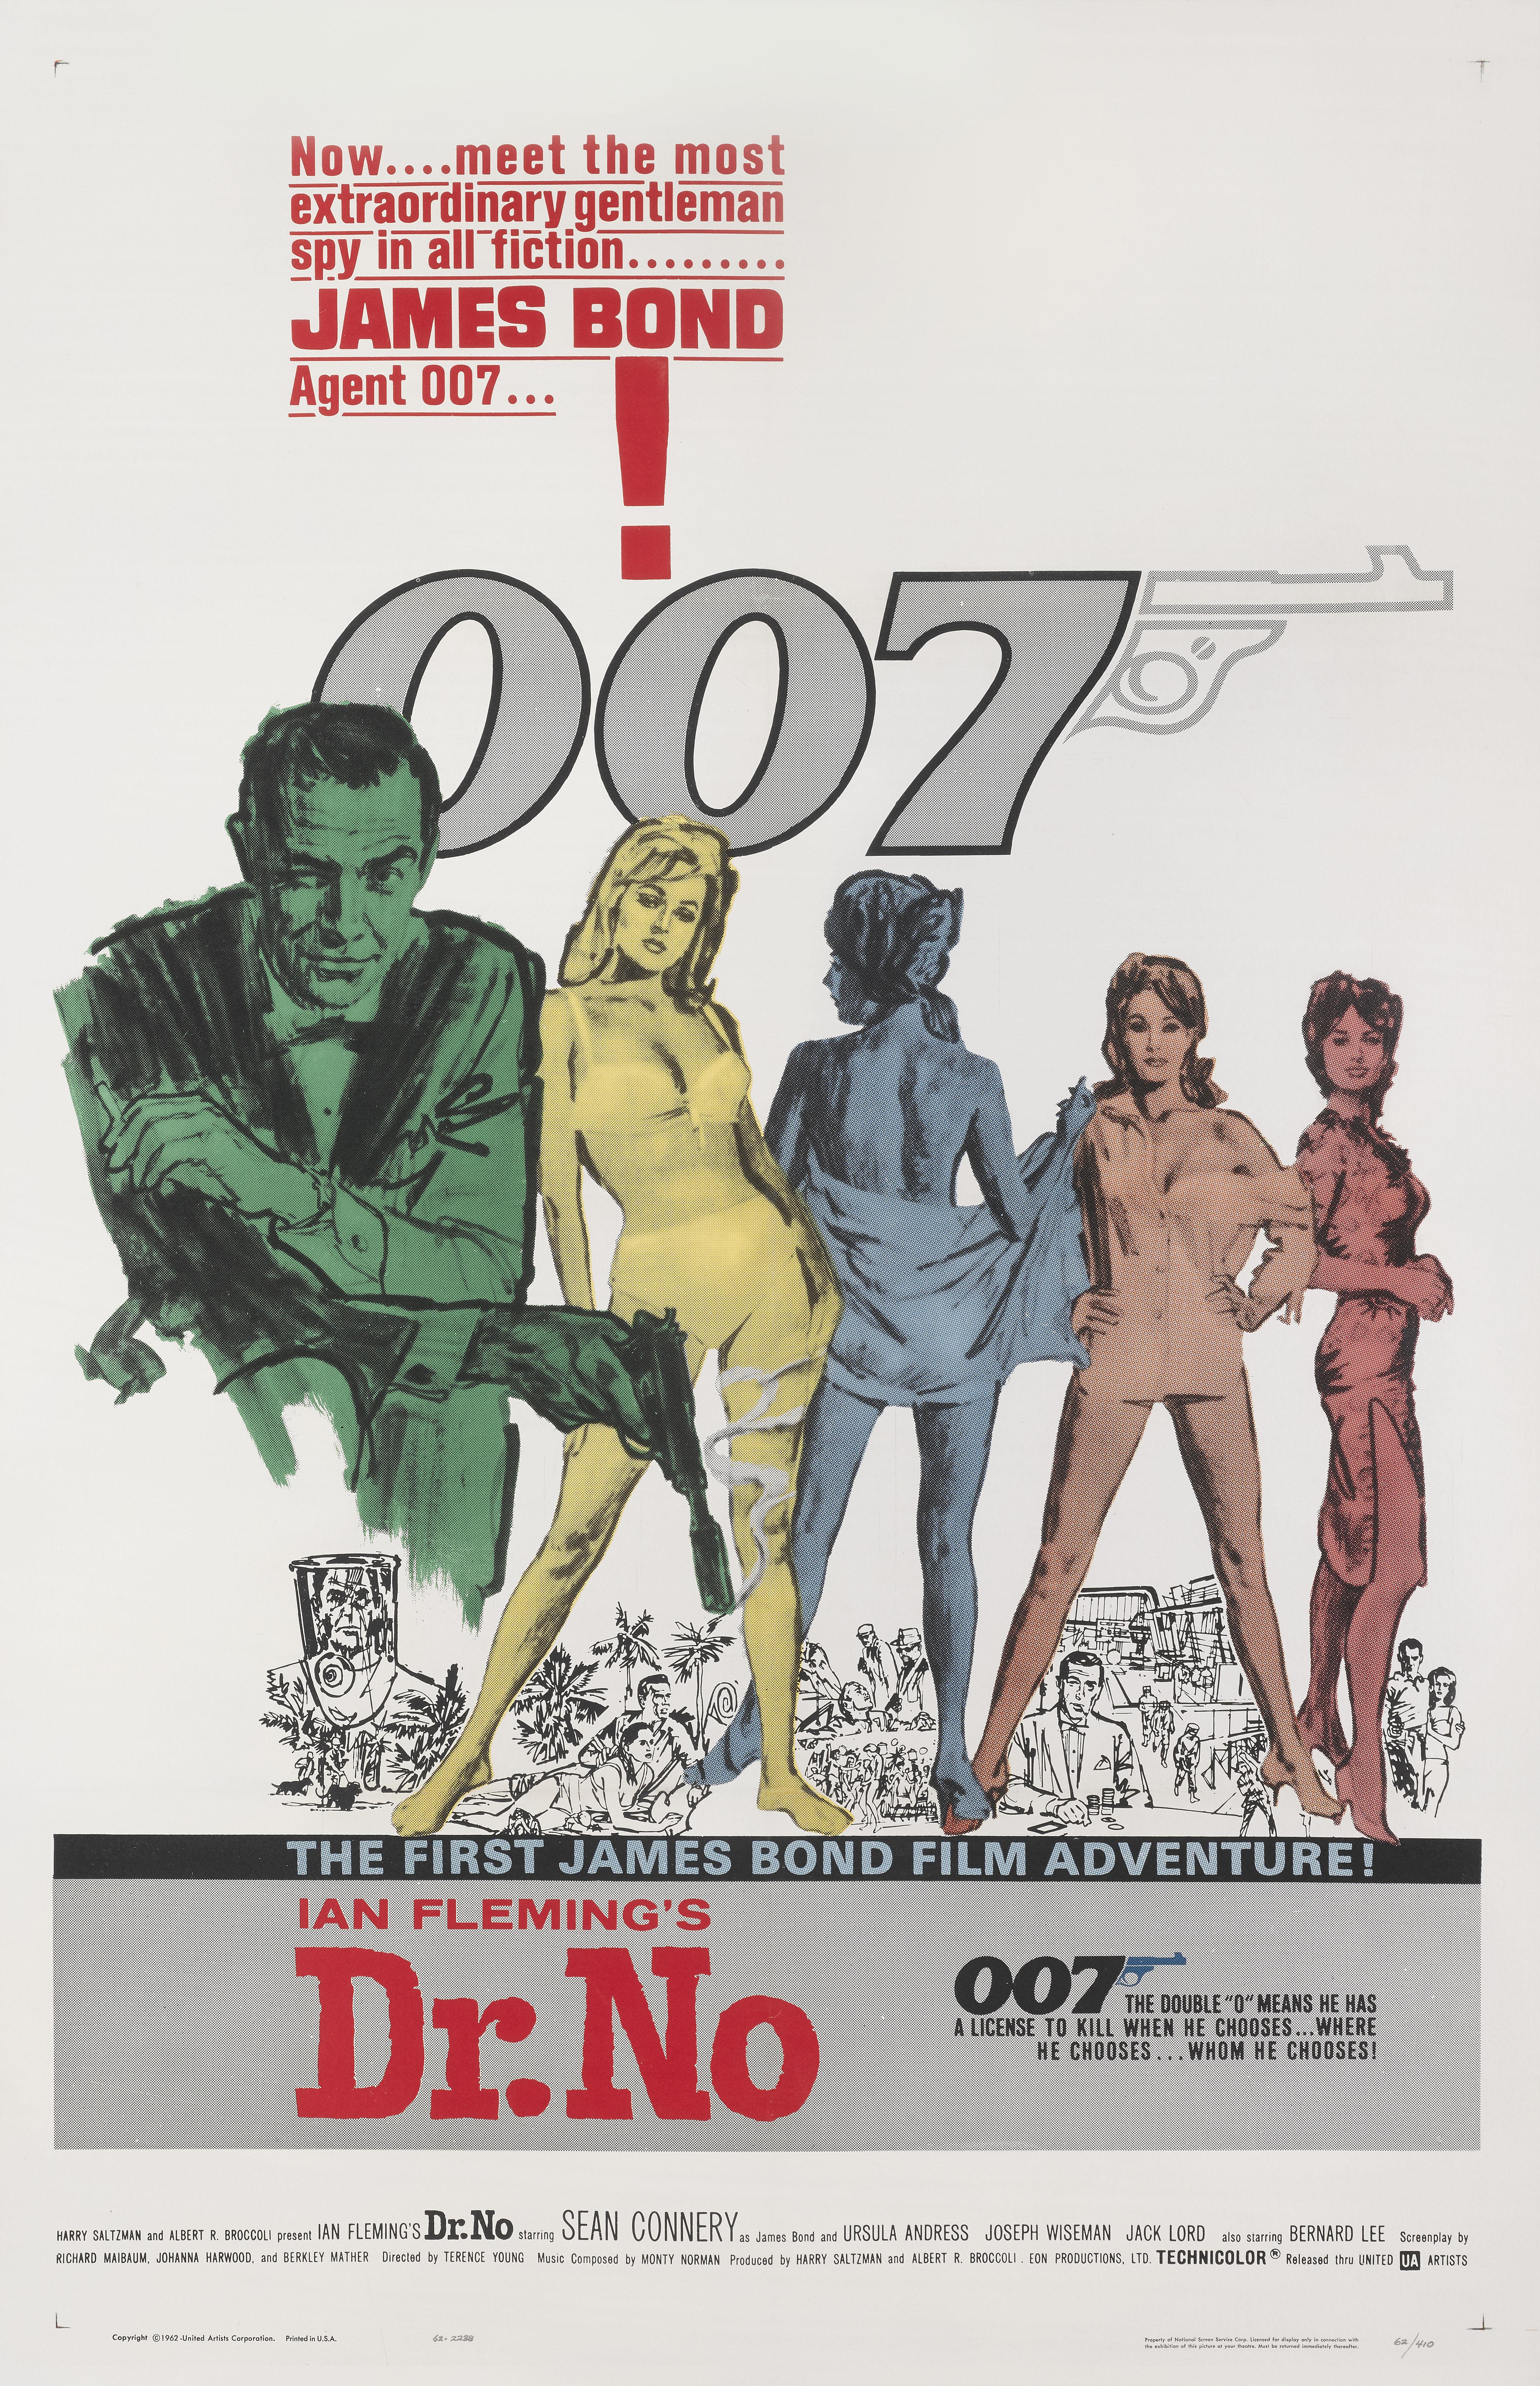 Originales amerikanisches Filmplakat für Dr. No mit Sean Connery in der Hauptrolle, dem ersten James-Bond-Film. Basierend auf dem gleichnamigen Roman von Ian Fleming aus dem Jahr 1958. Der Film war der erste einer erfolgreichen Serie von